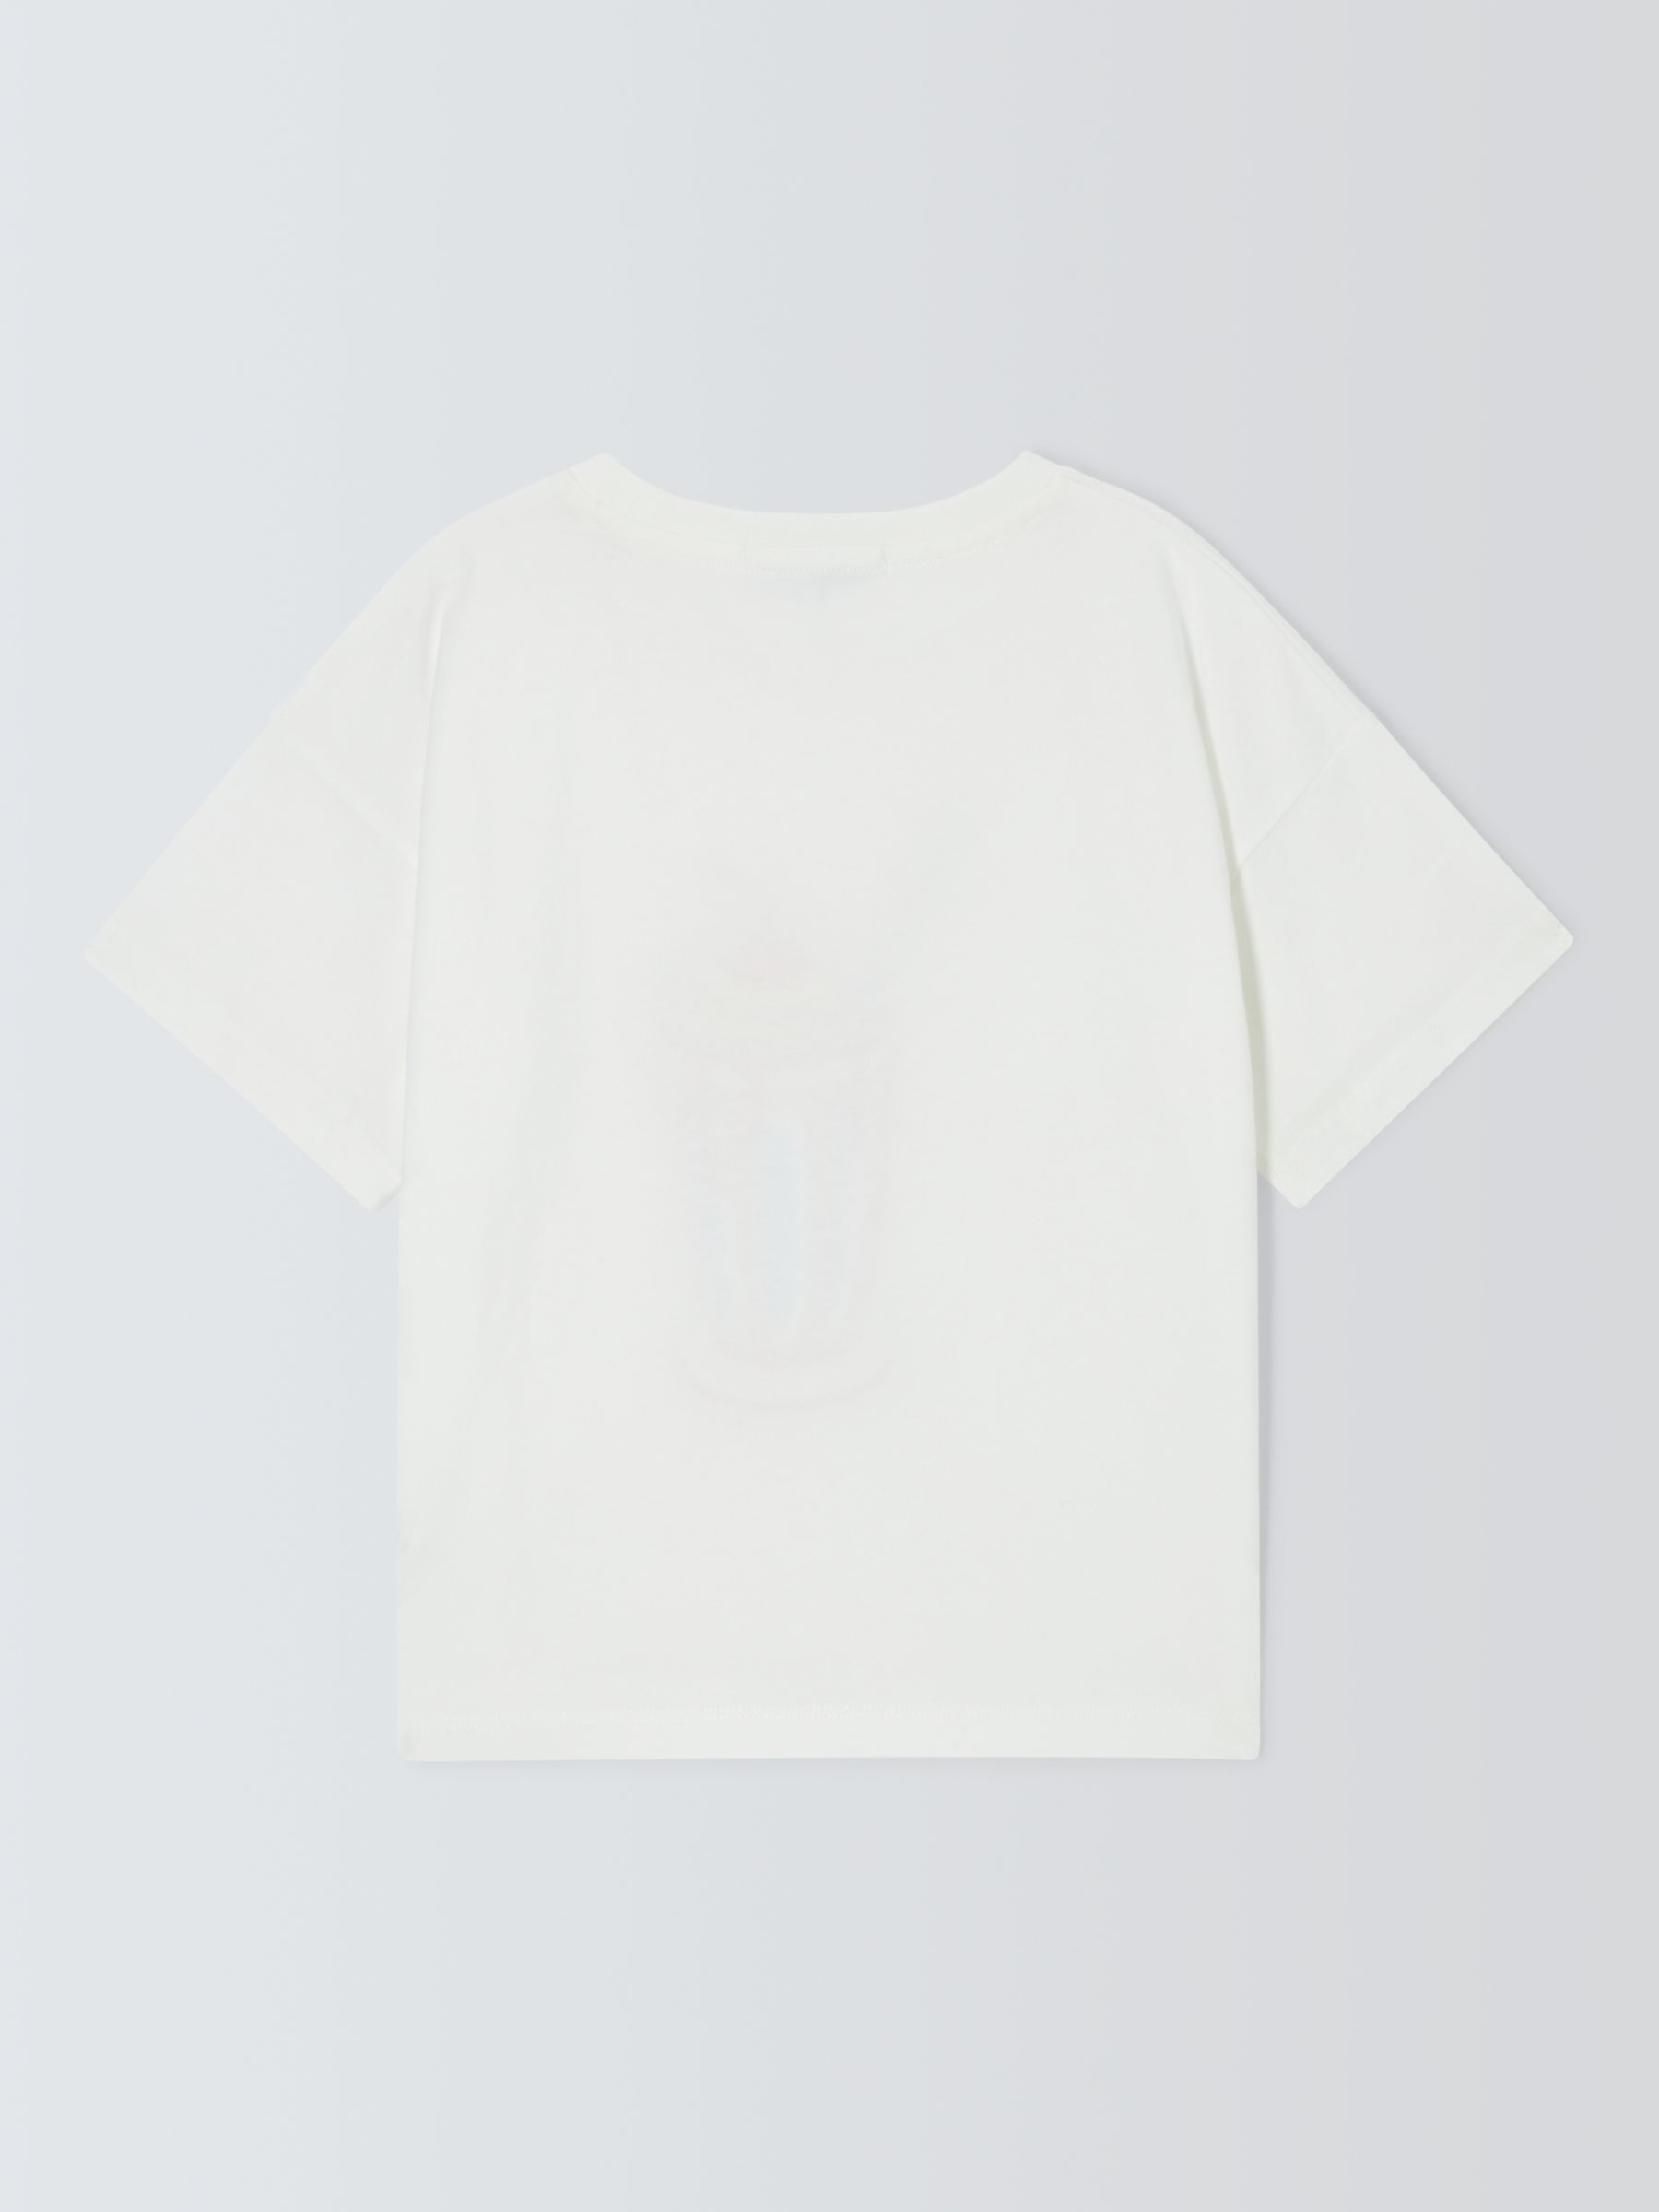 Olivia Rubin Kids' Milkshake Graphic T-Shirt, White/Multi, 4-5 years